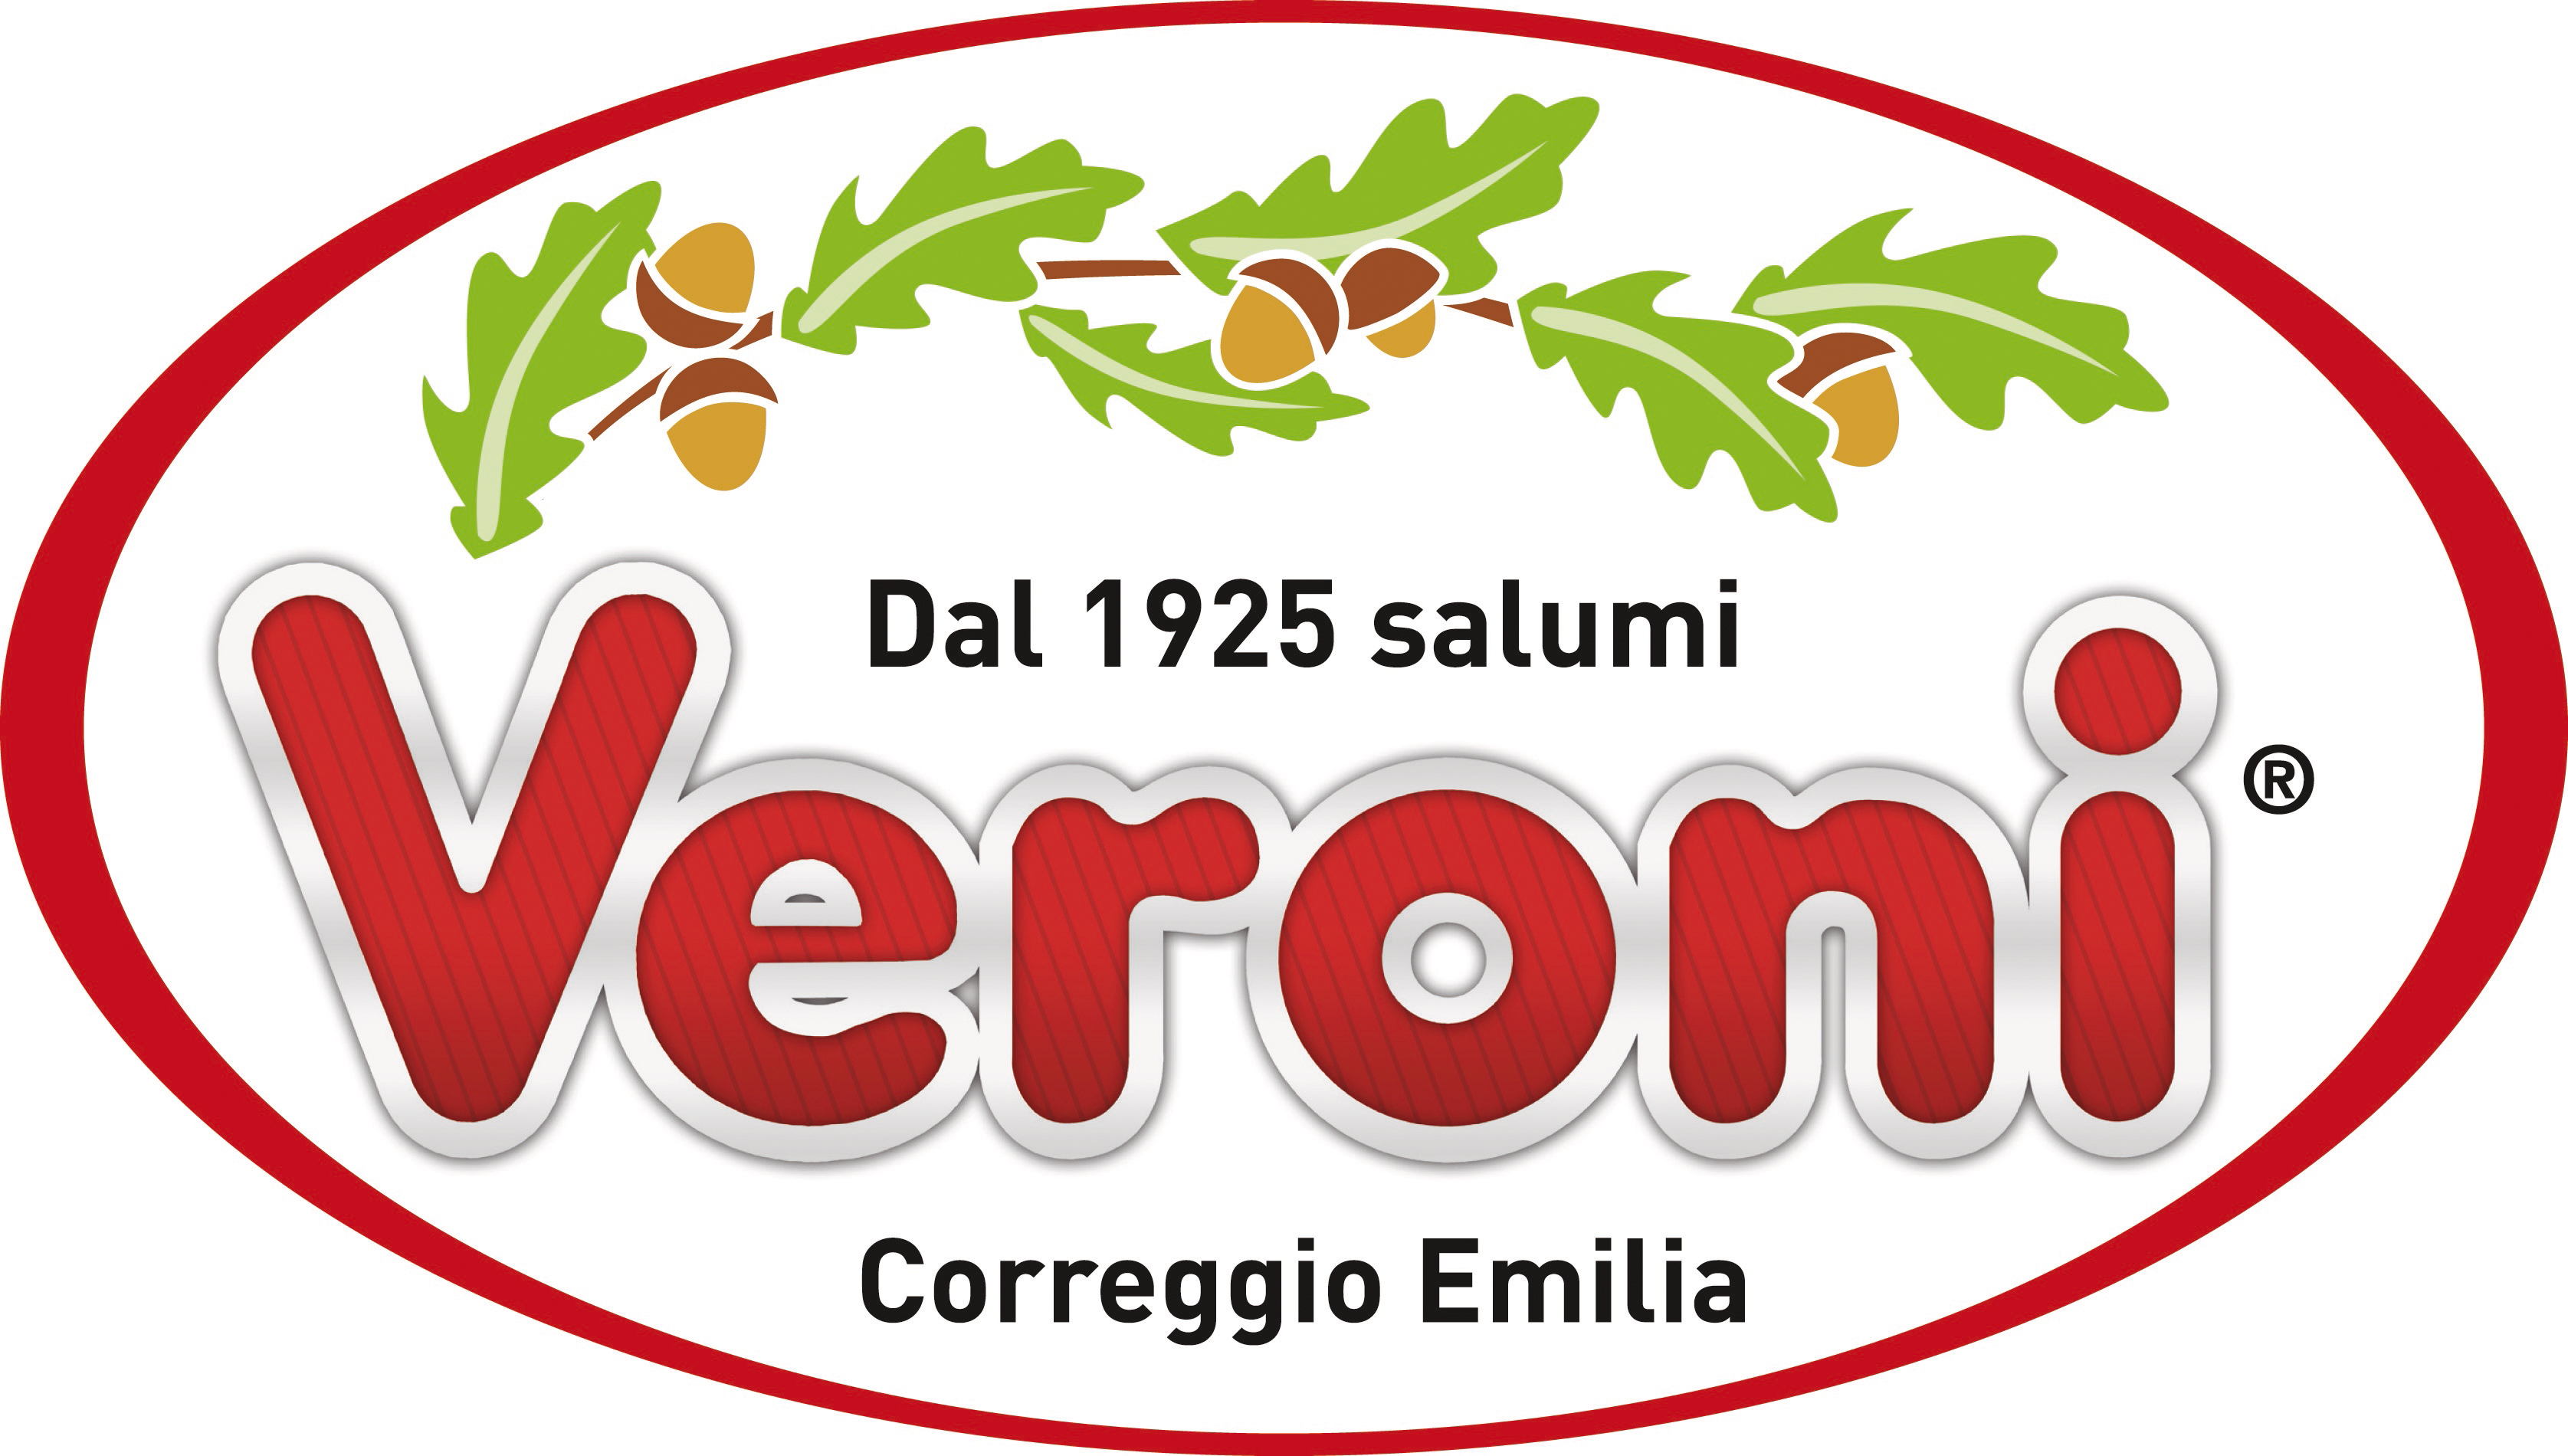 Veroni